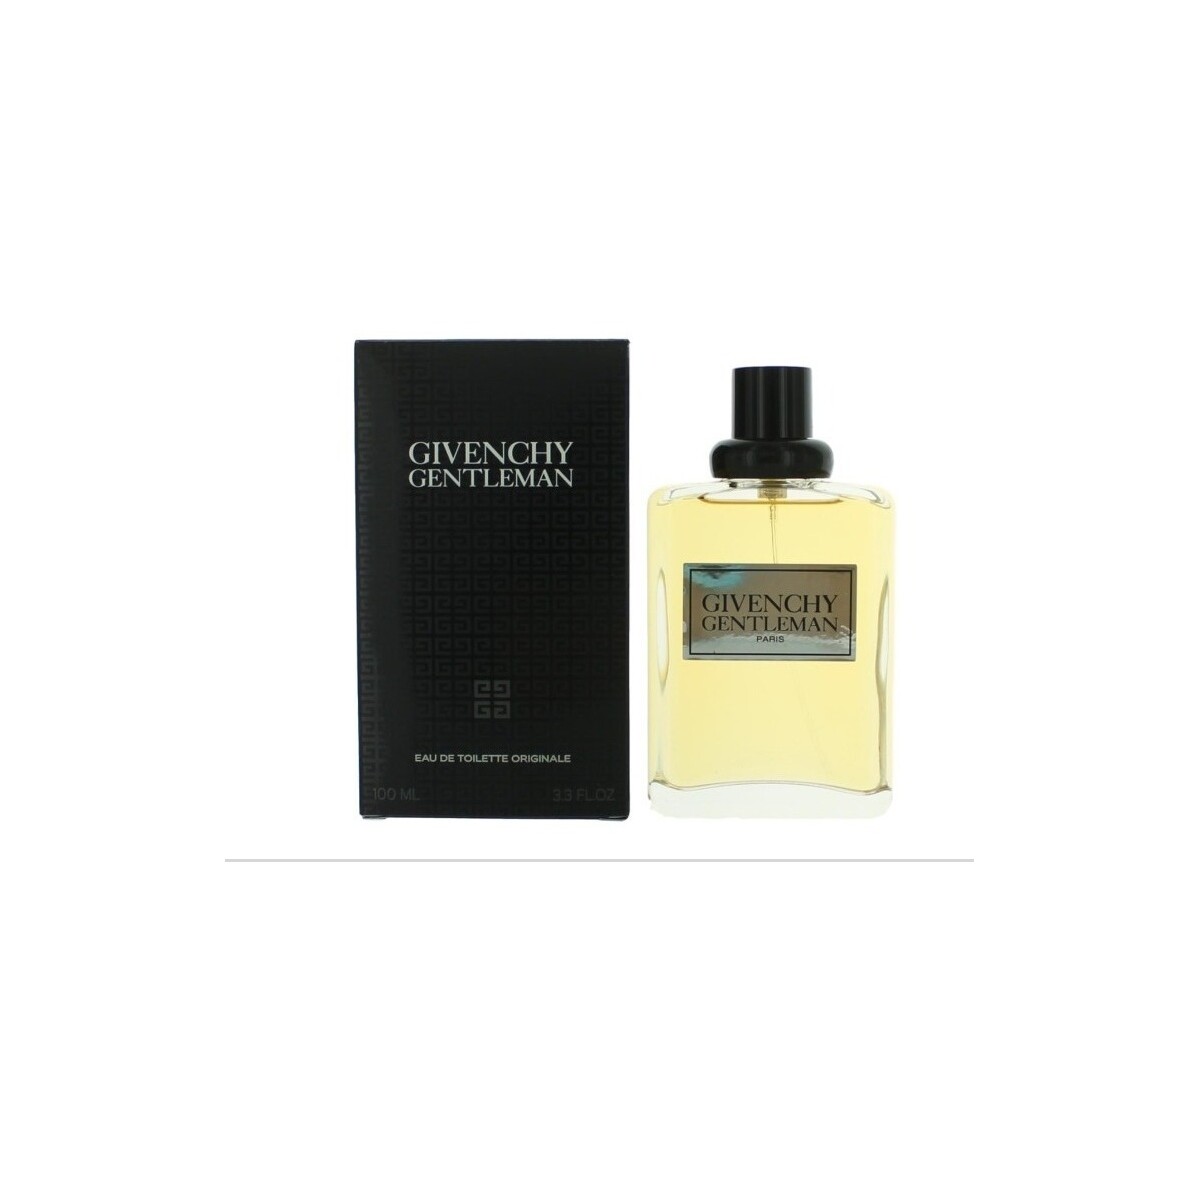 Belleza Hombre Colonia Givenchy Gentleman - Eau de Toilette Originale - 100ml - Vaporizador Gentleman - cologne Originale - 100ml - spray